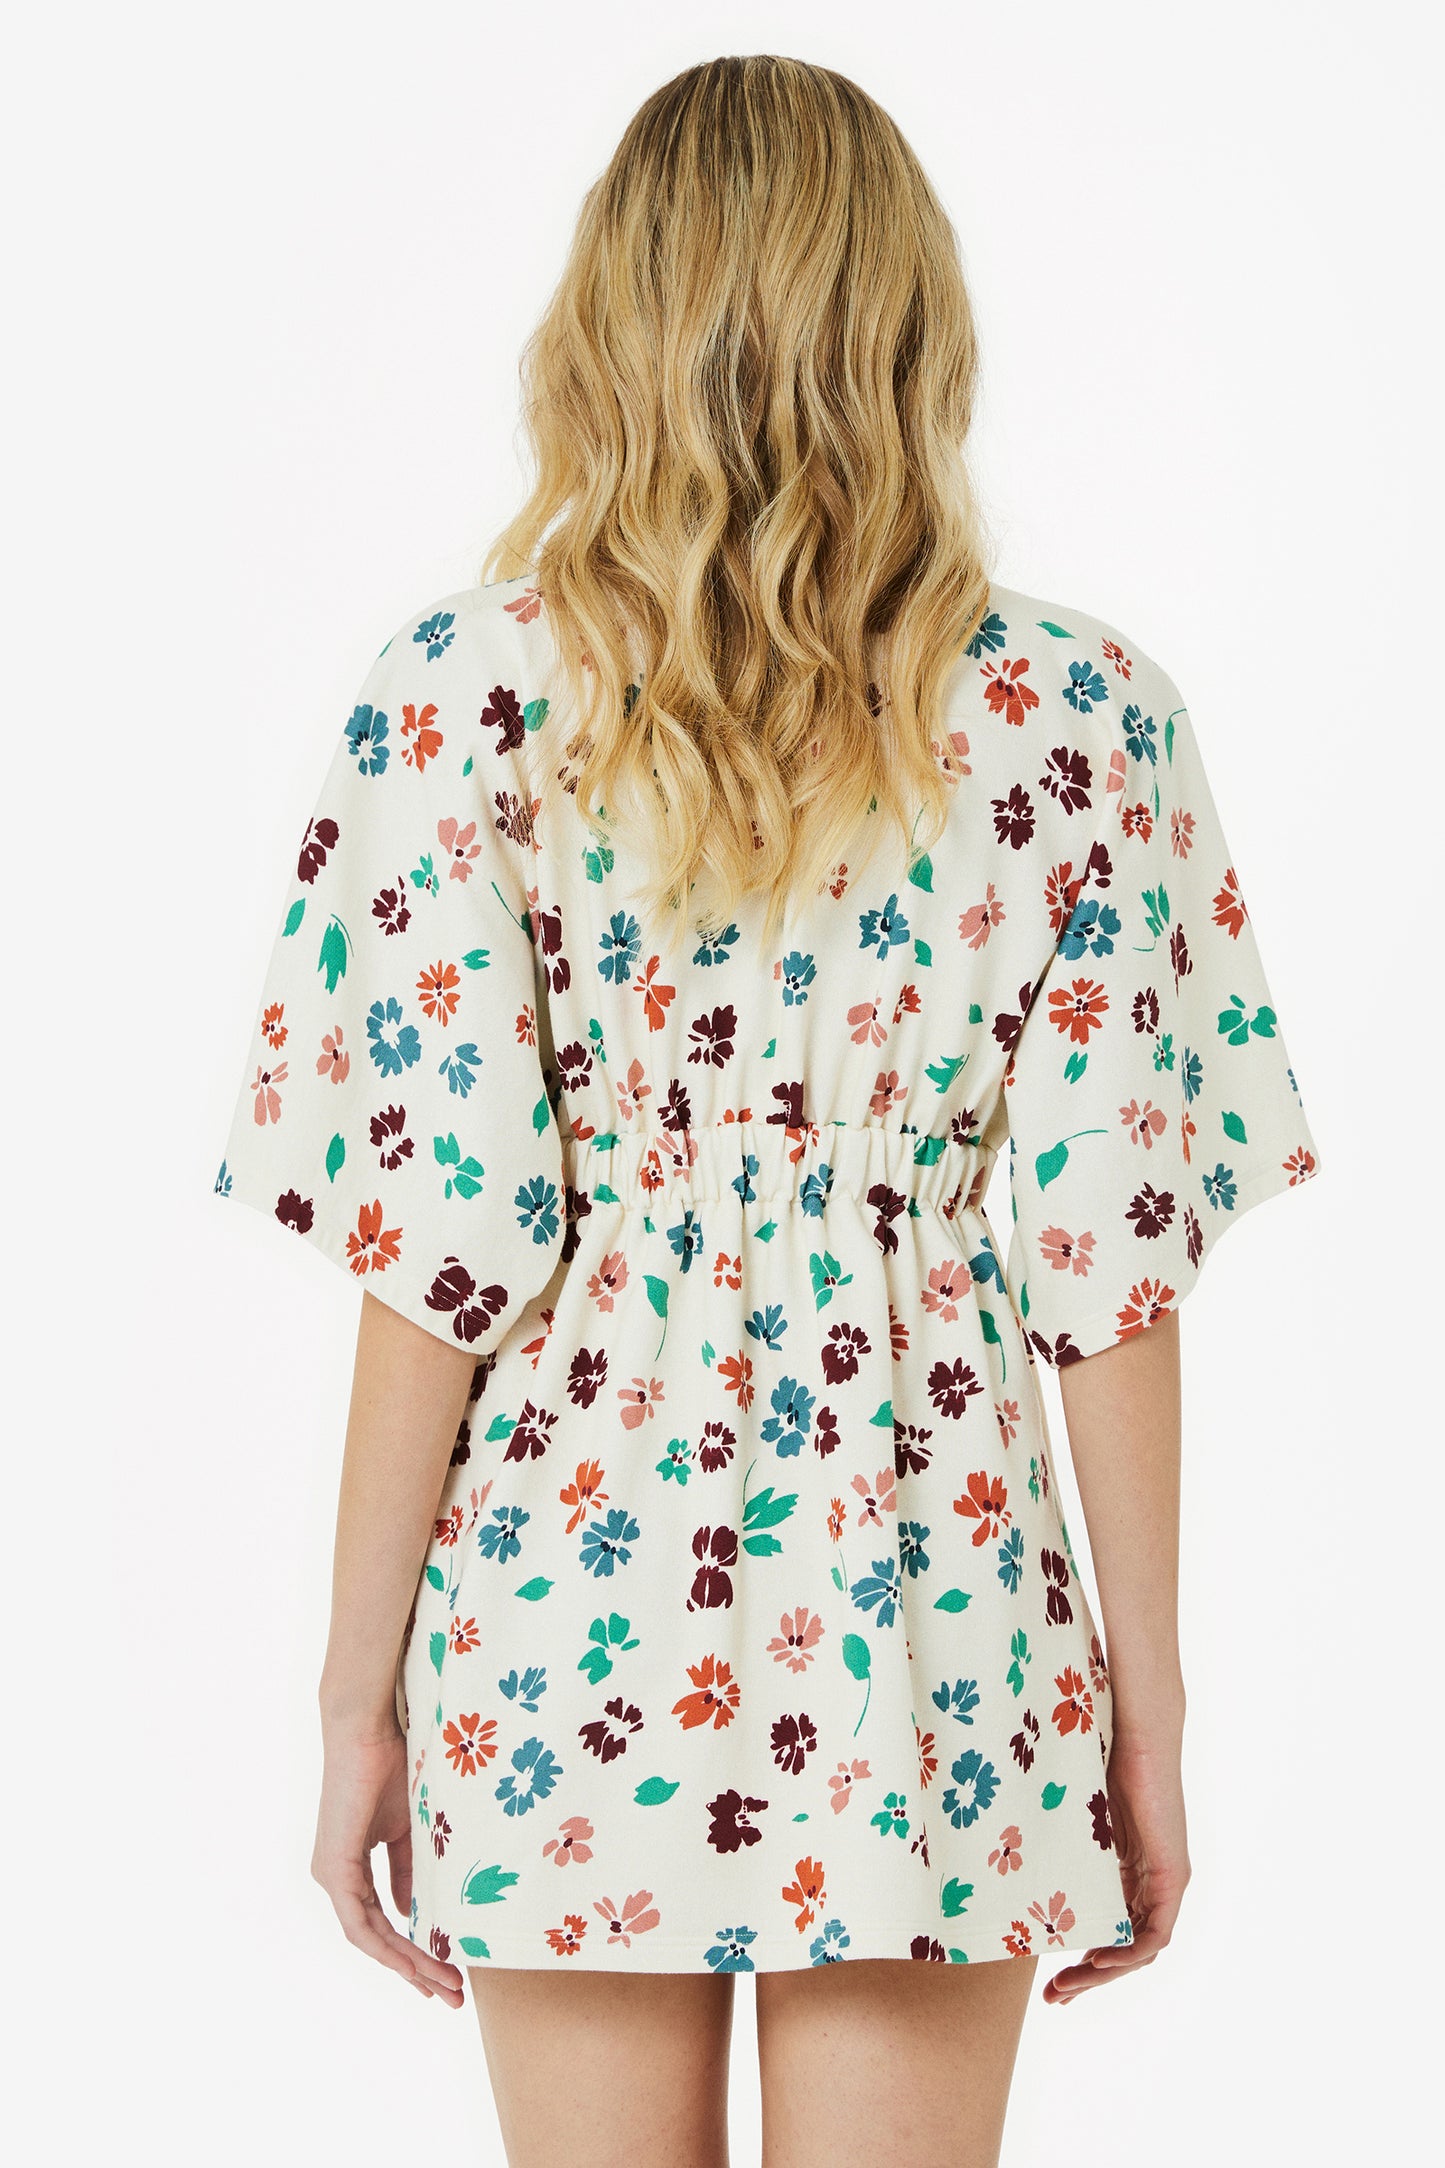 AZZURRA – Sweatshirt mini dress Flora